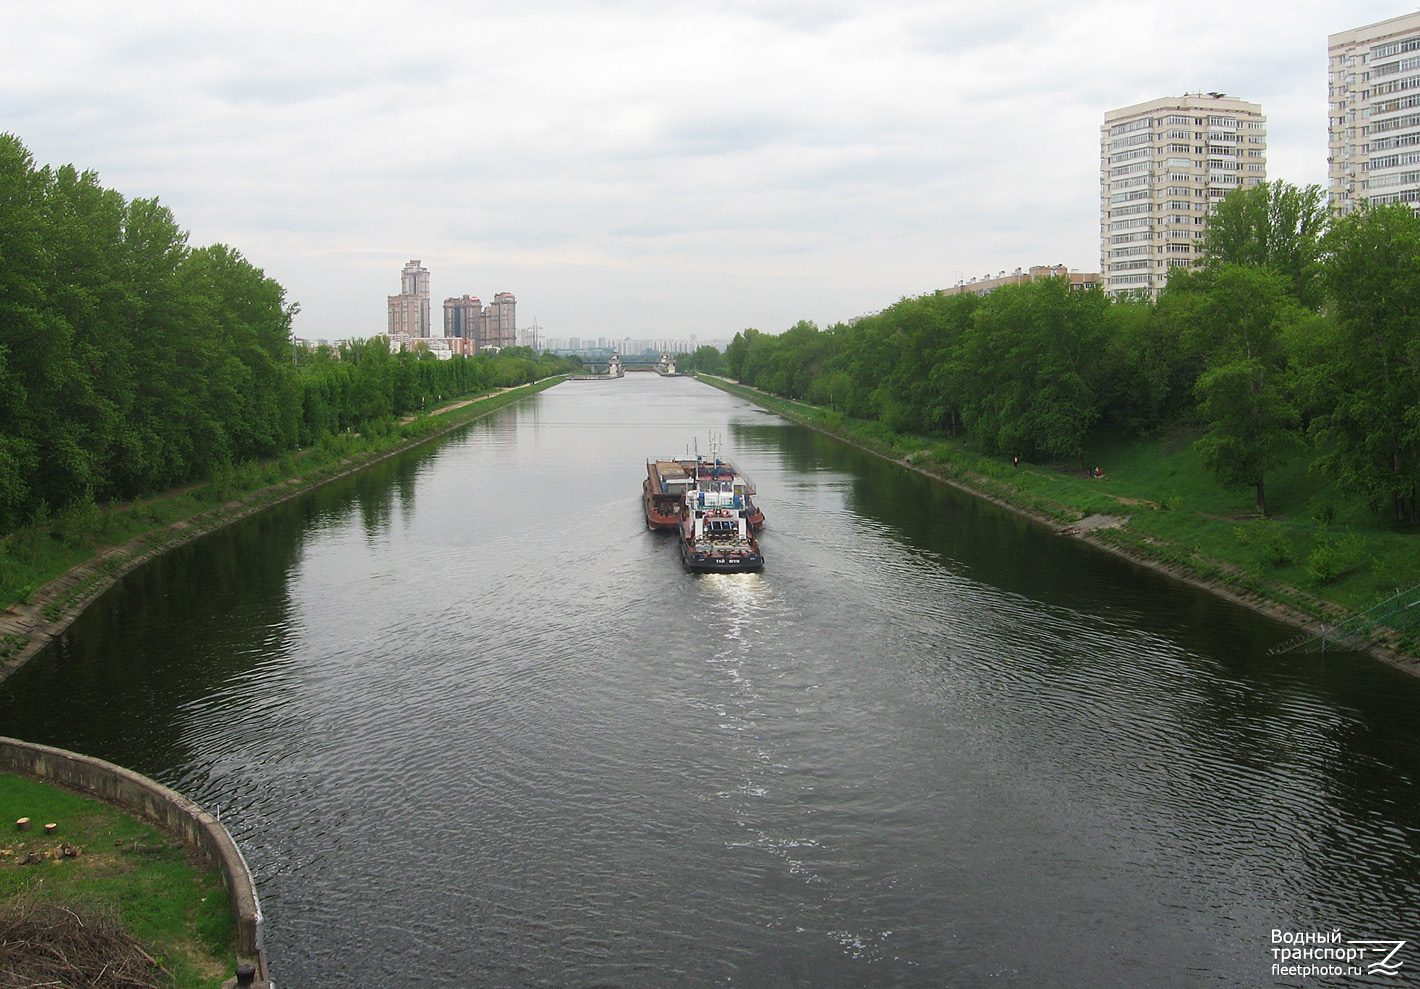 3220, Тайфун. Moscow Canal